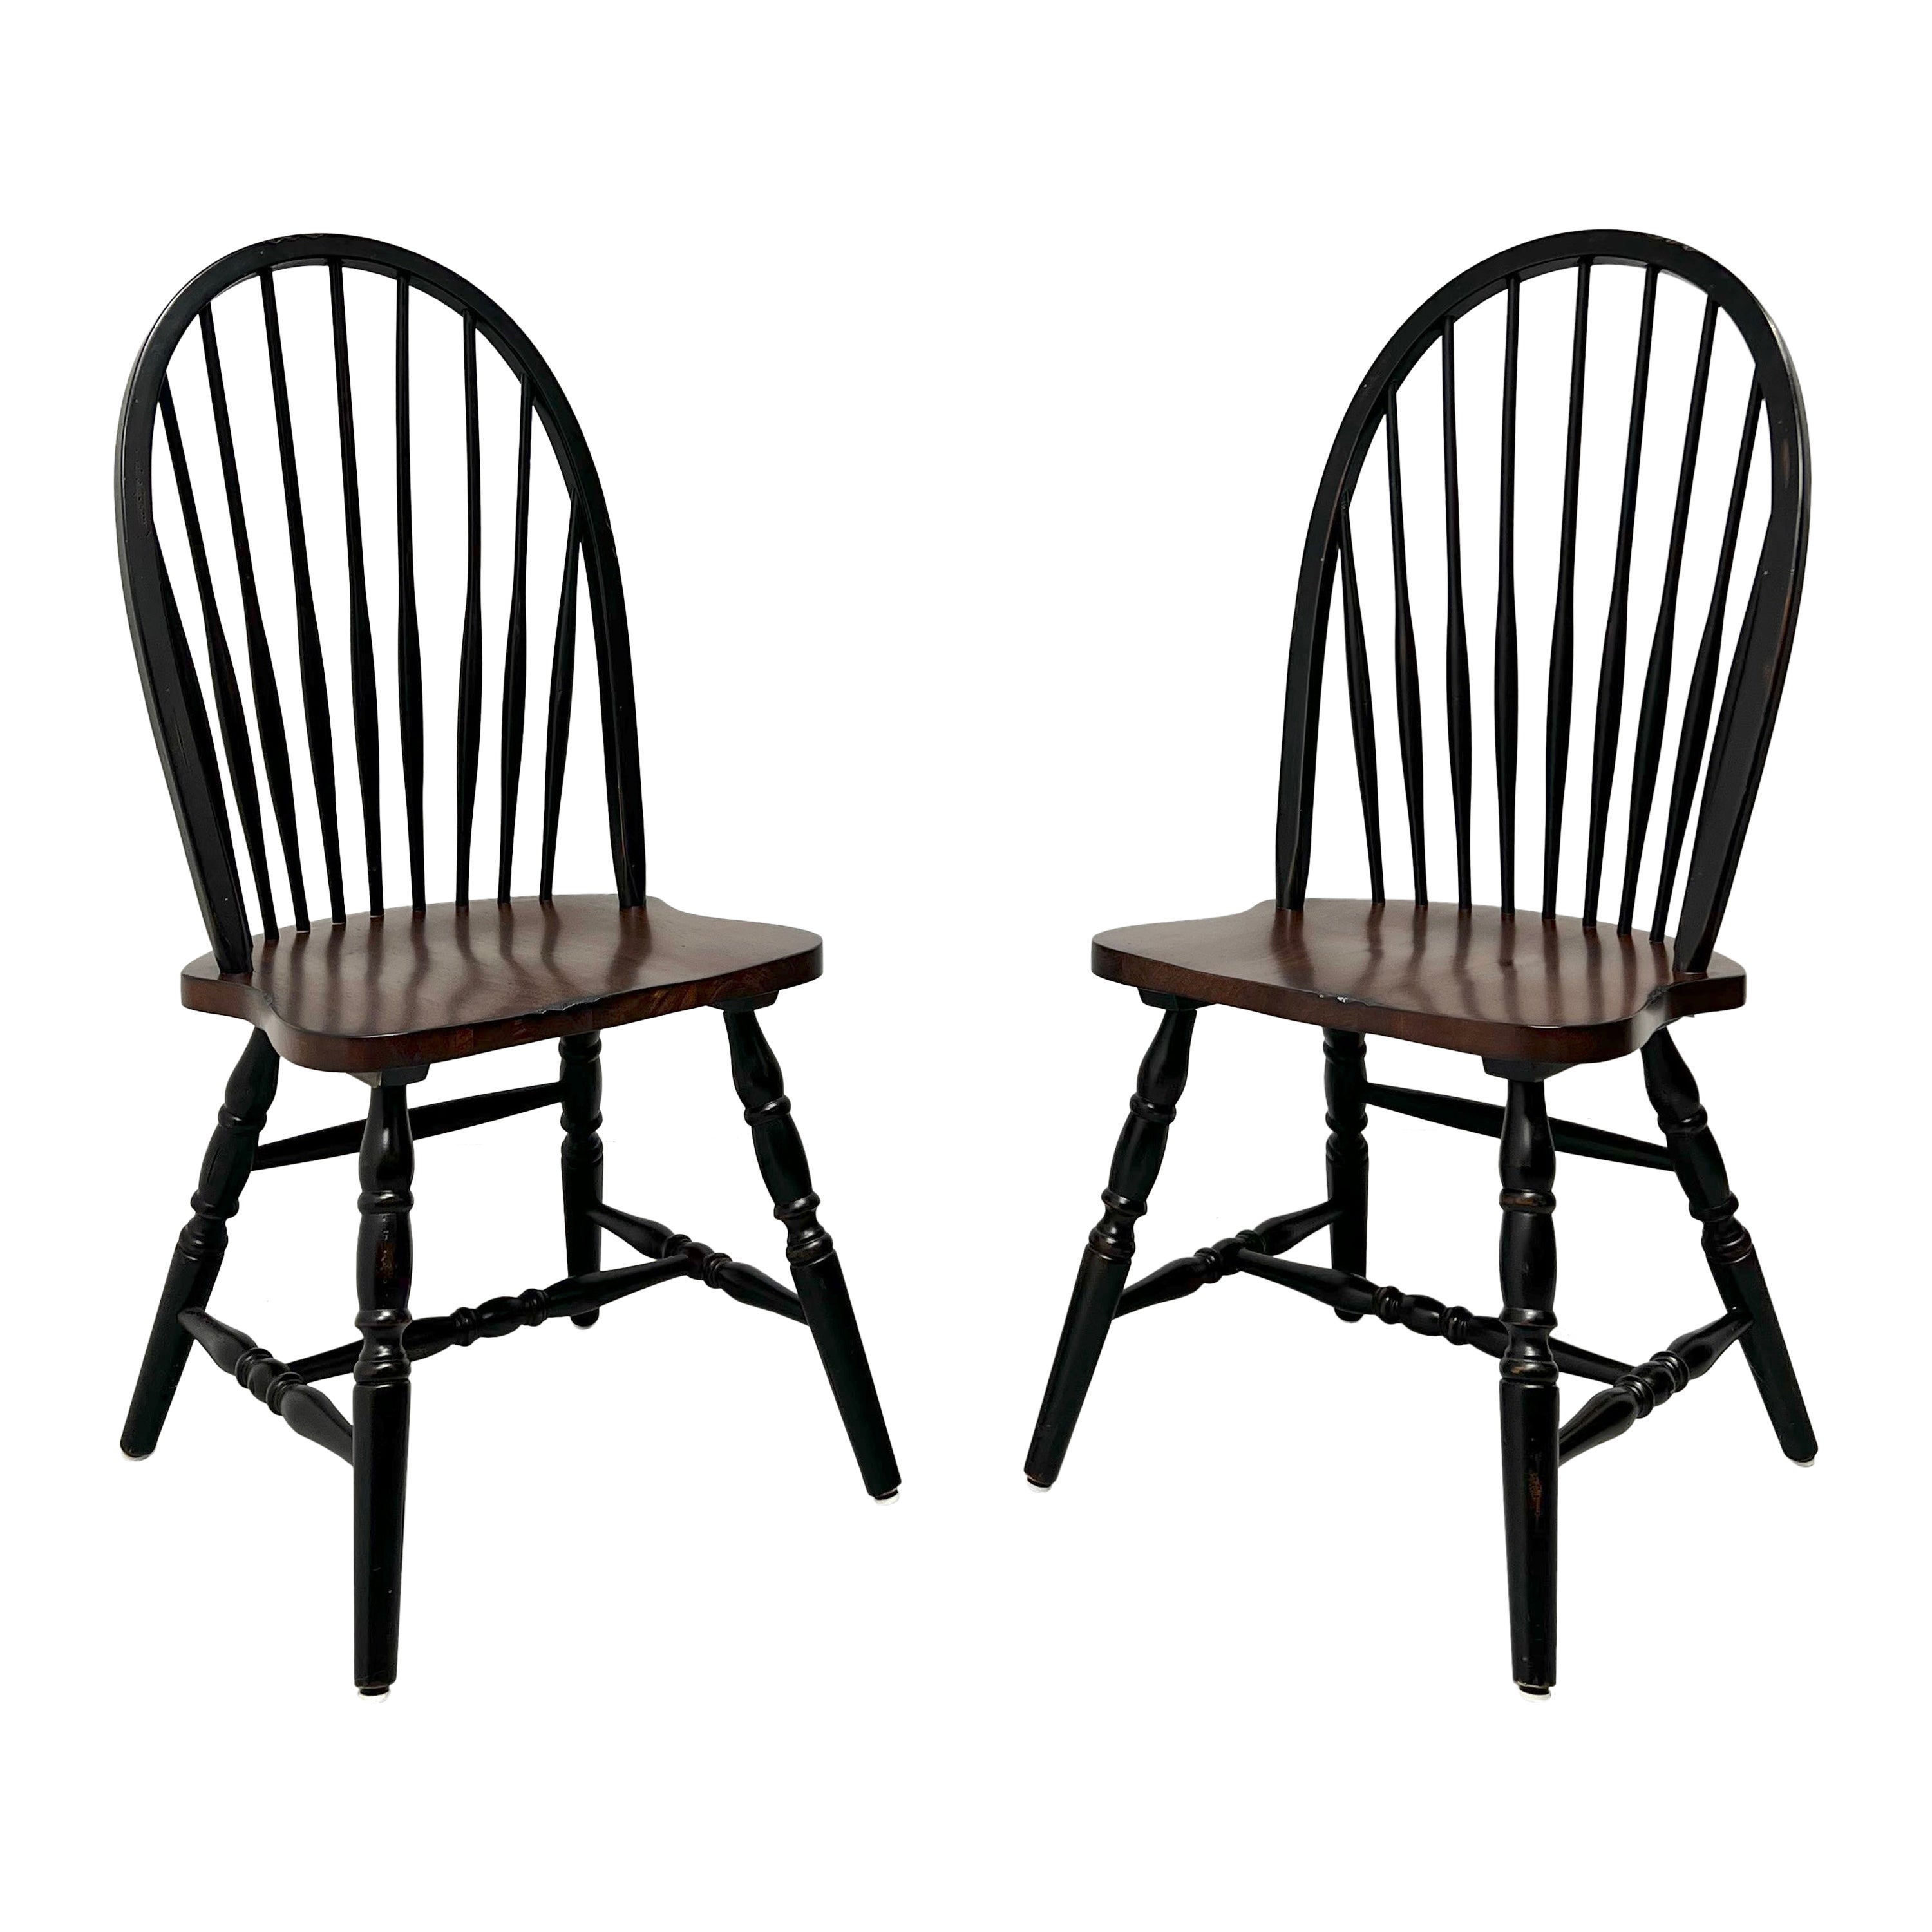 Schwarze Windsor-Beistellstühle im Used-Look des späten 20. Jahrhunderts – Paar